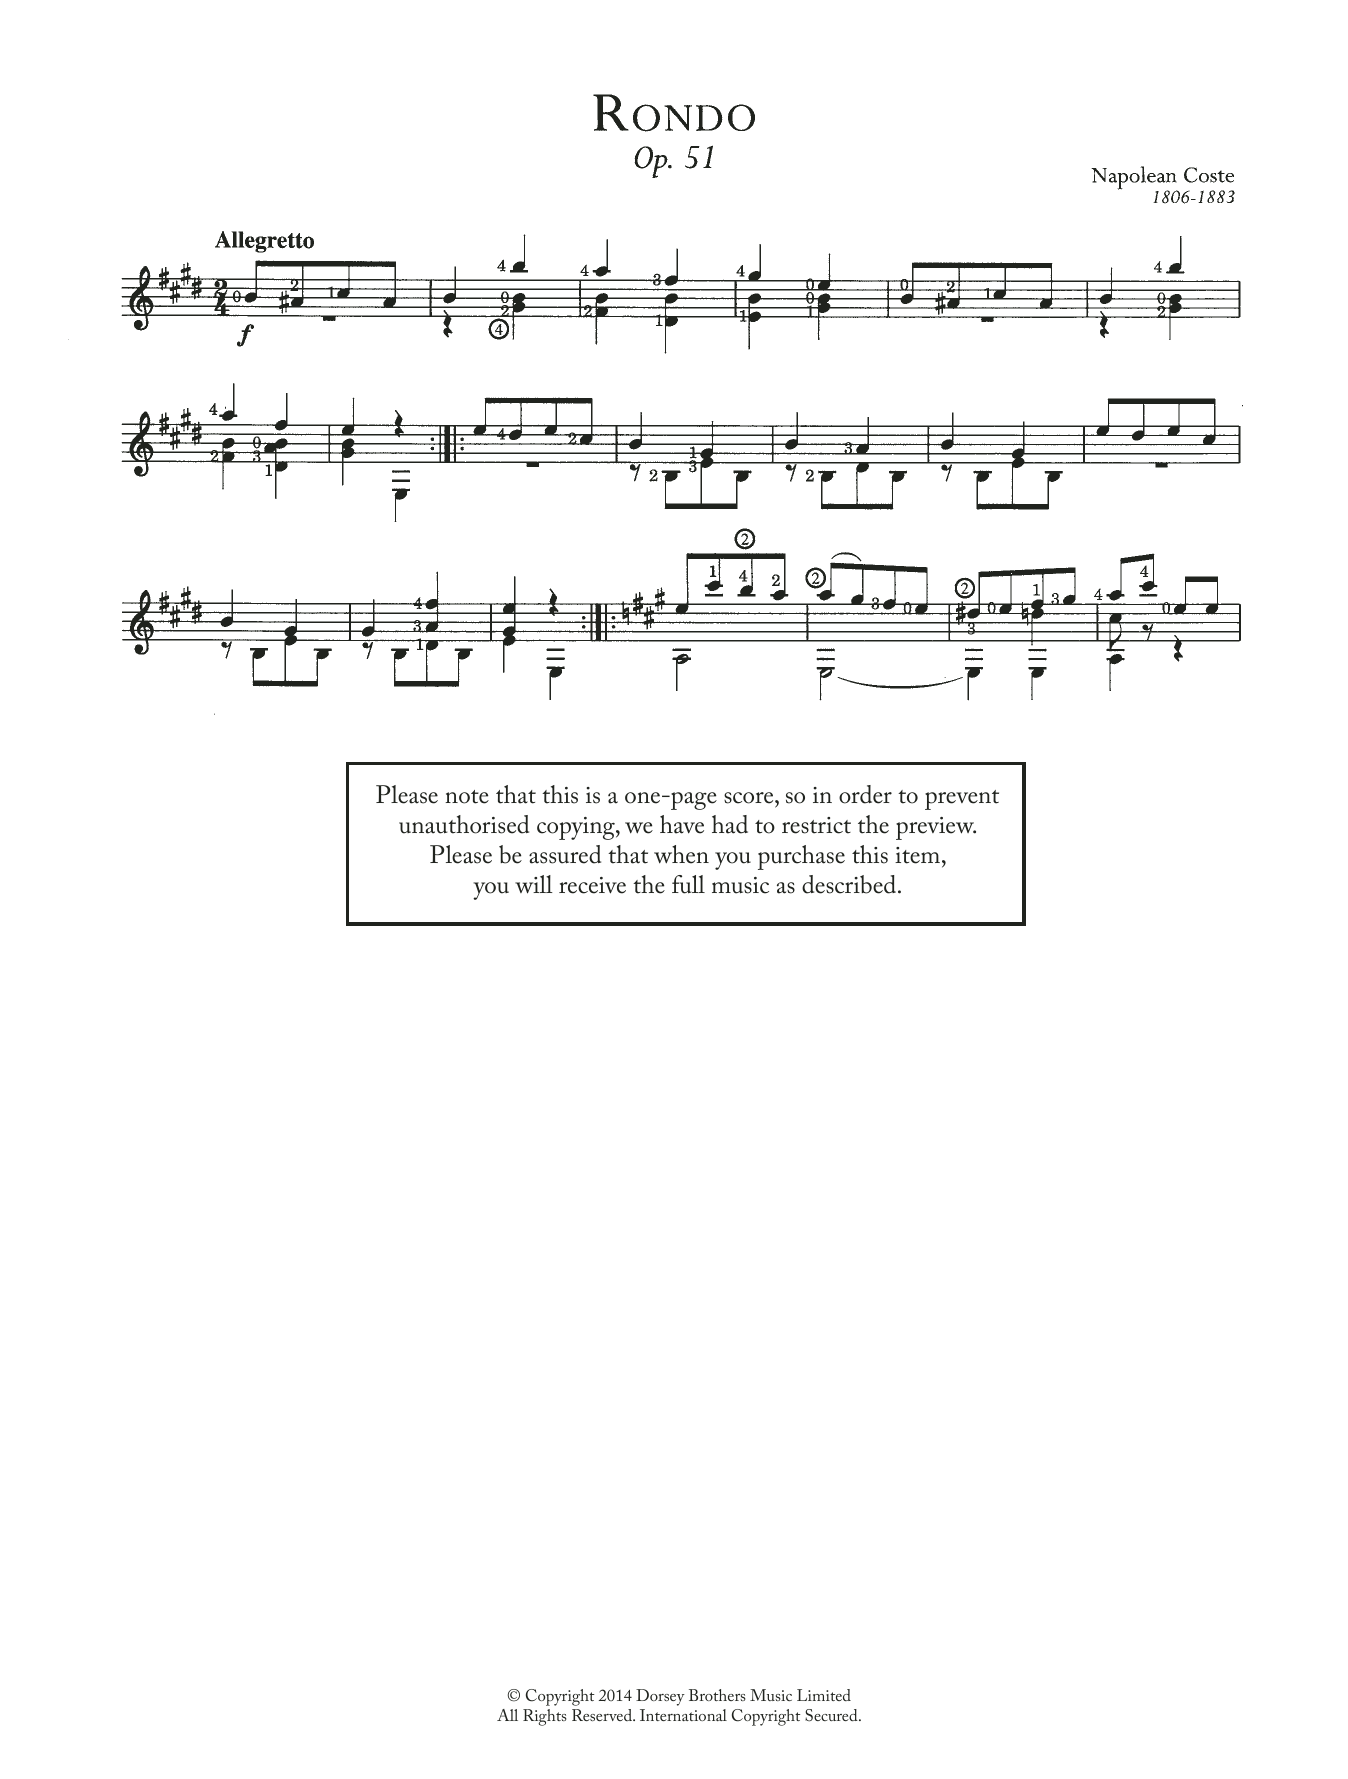 Download Napoleon Coste Rondo, Op.51 Sheet Music